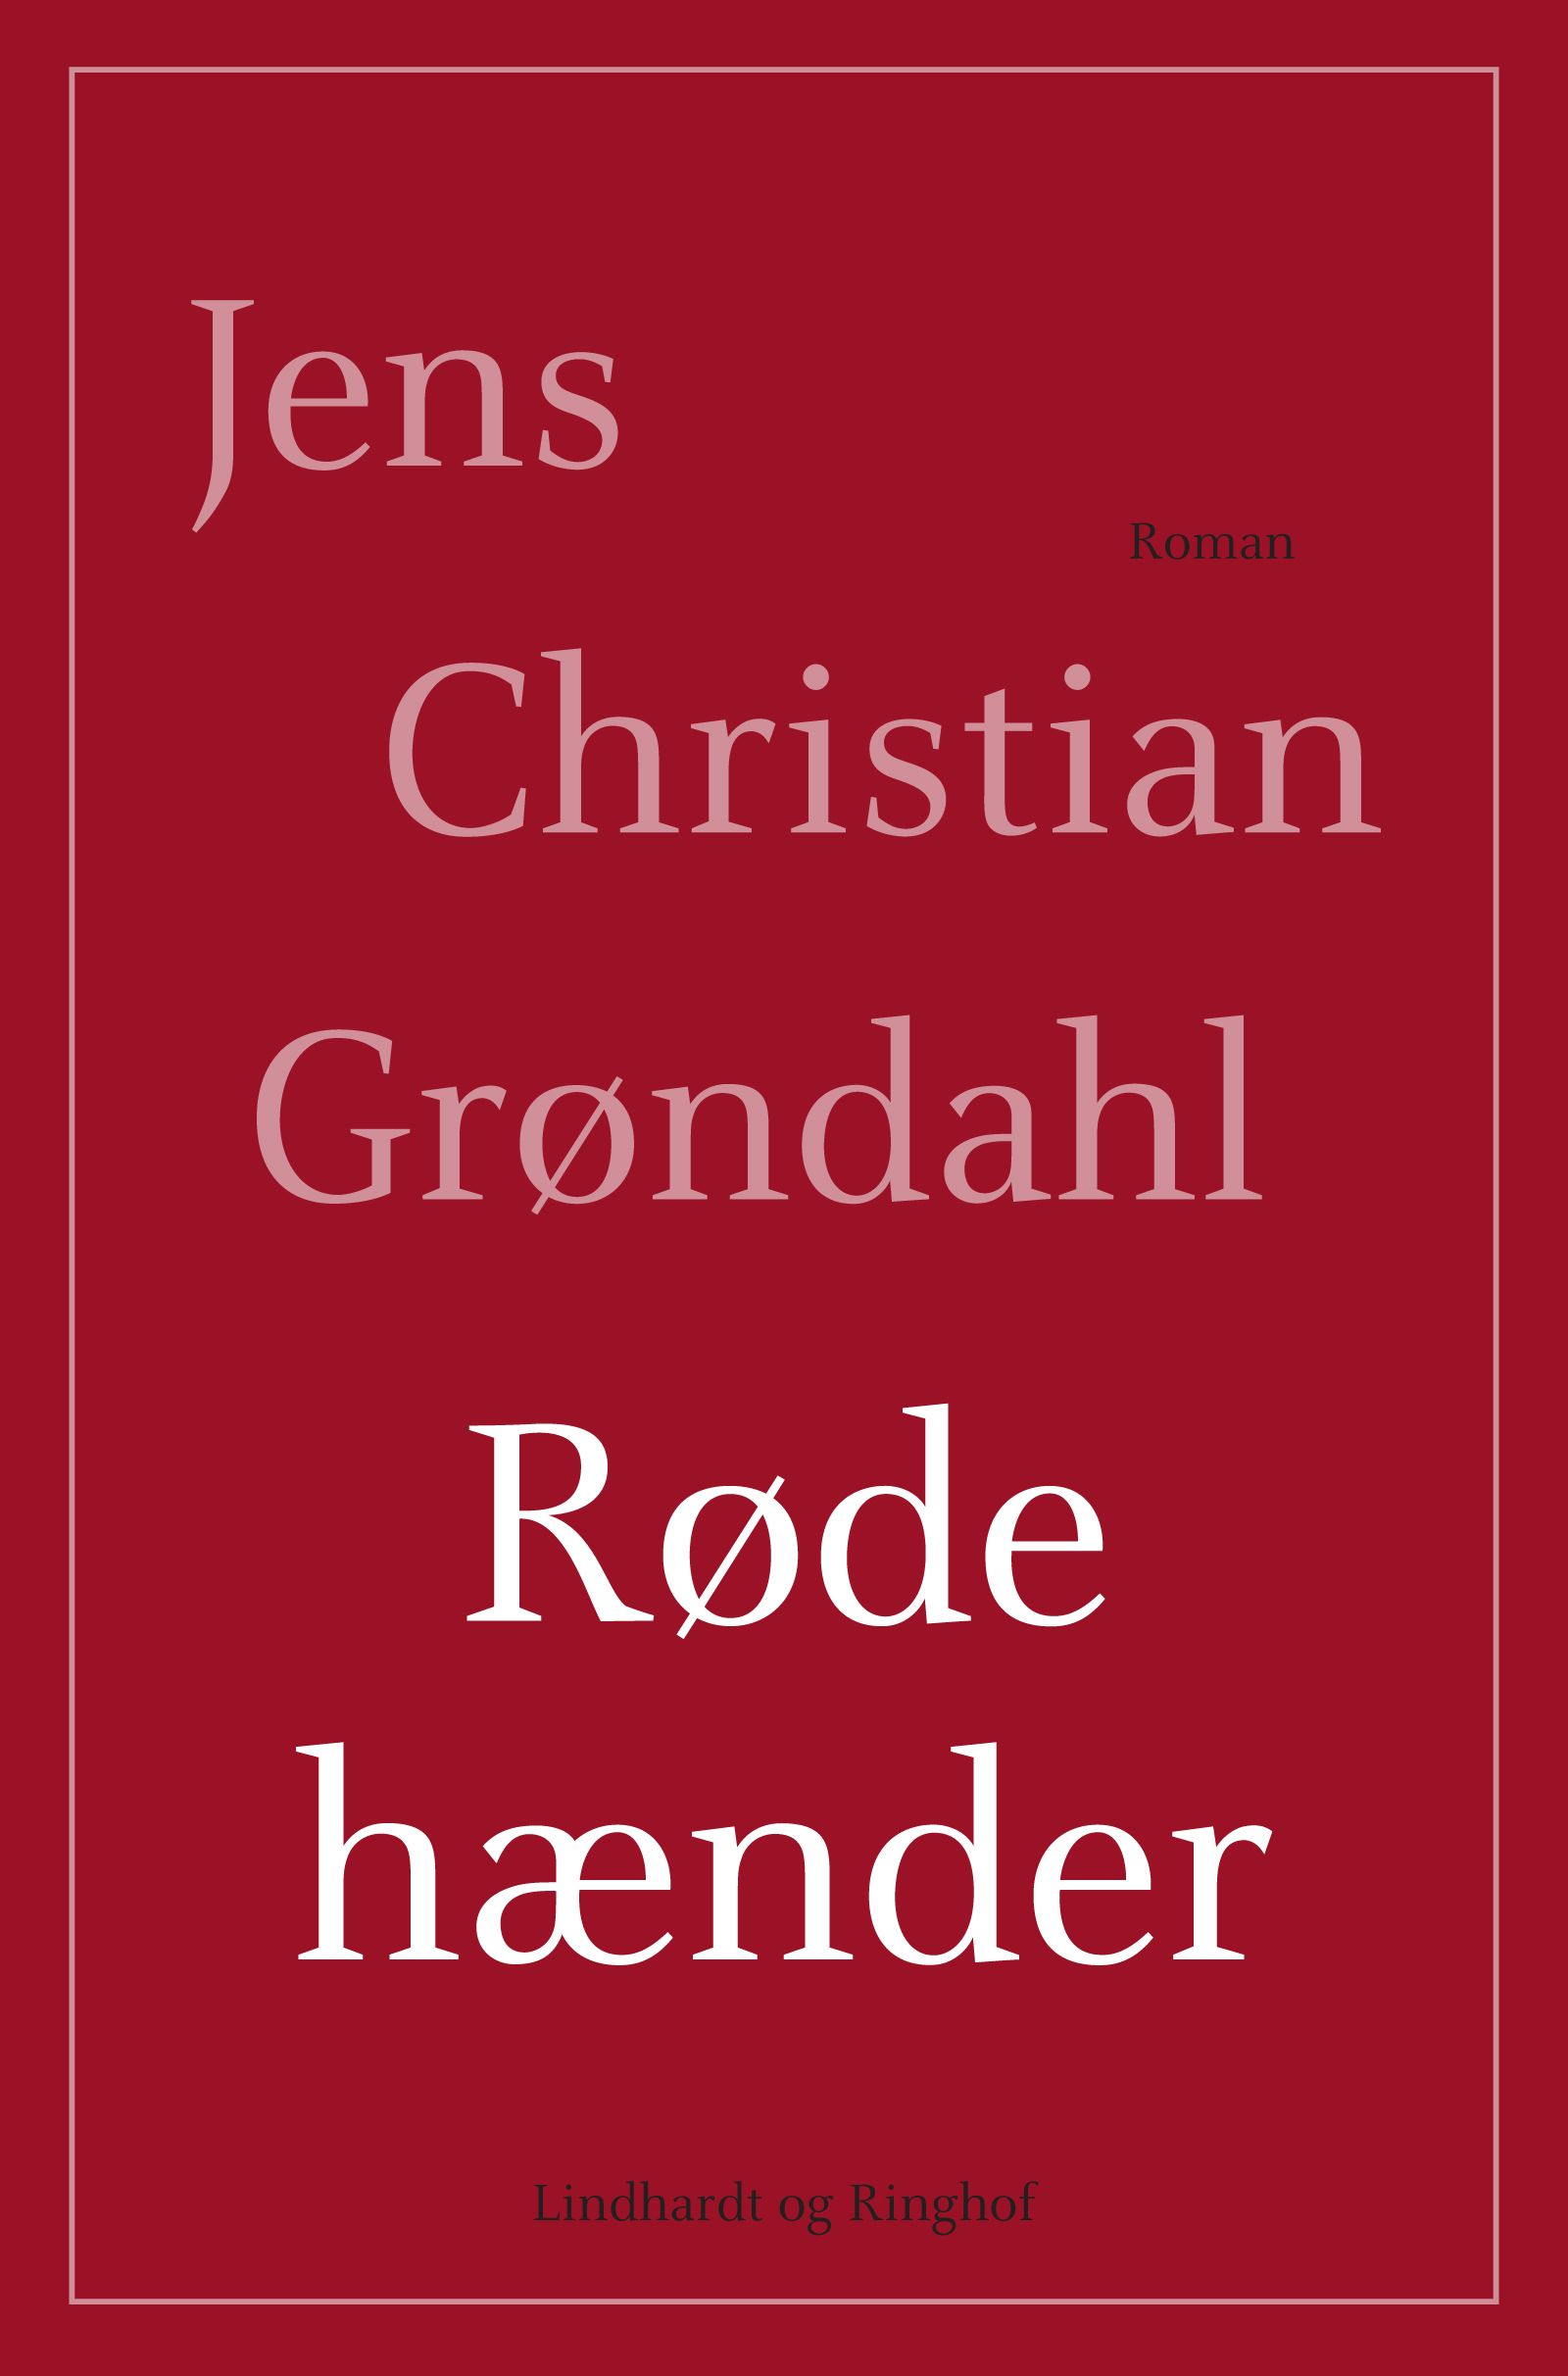 Røde hænder, e-bog af Jens Christian Grøndahl